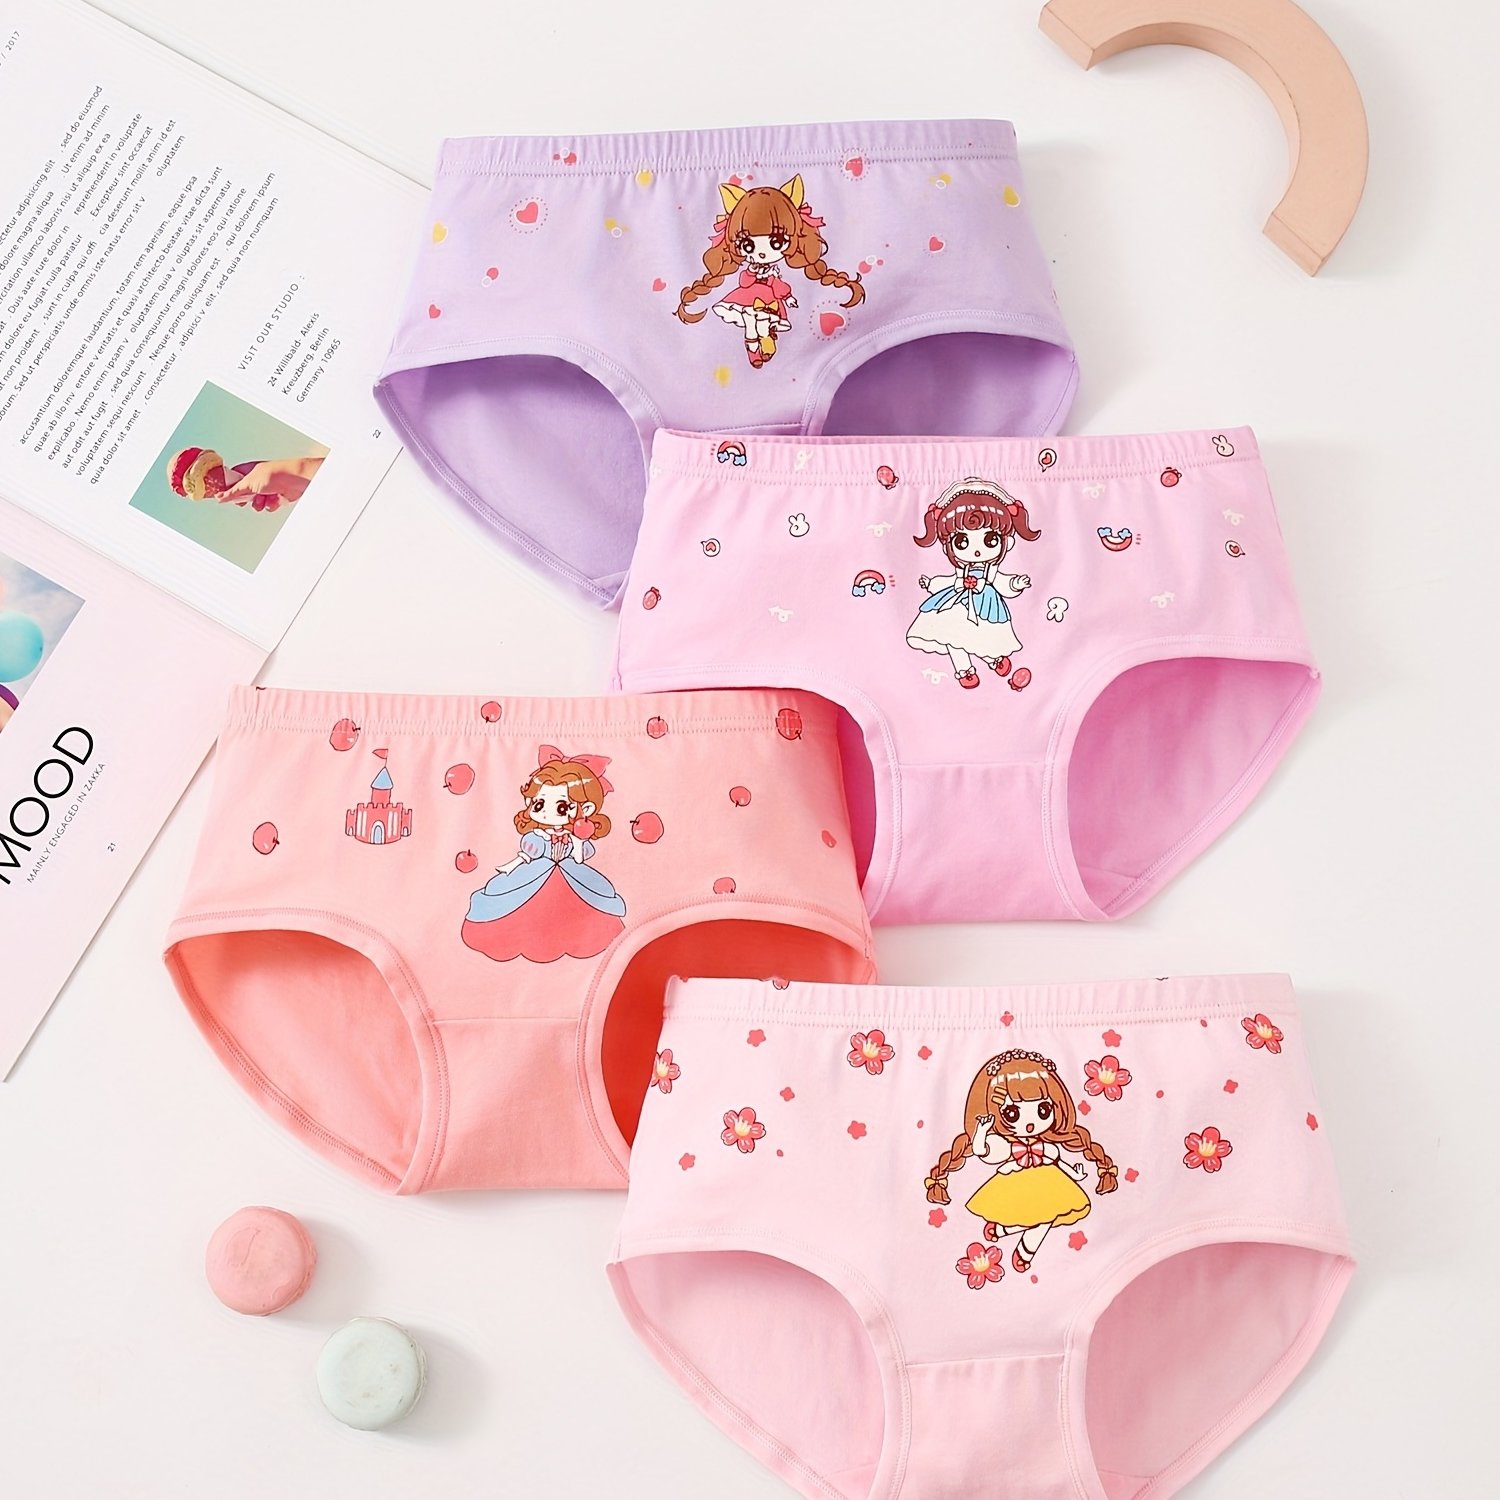 Cergrey Baby Underwear Cotton Cute Cartoon Pattern Skin-Friendly